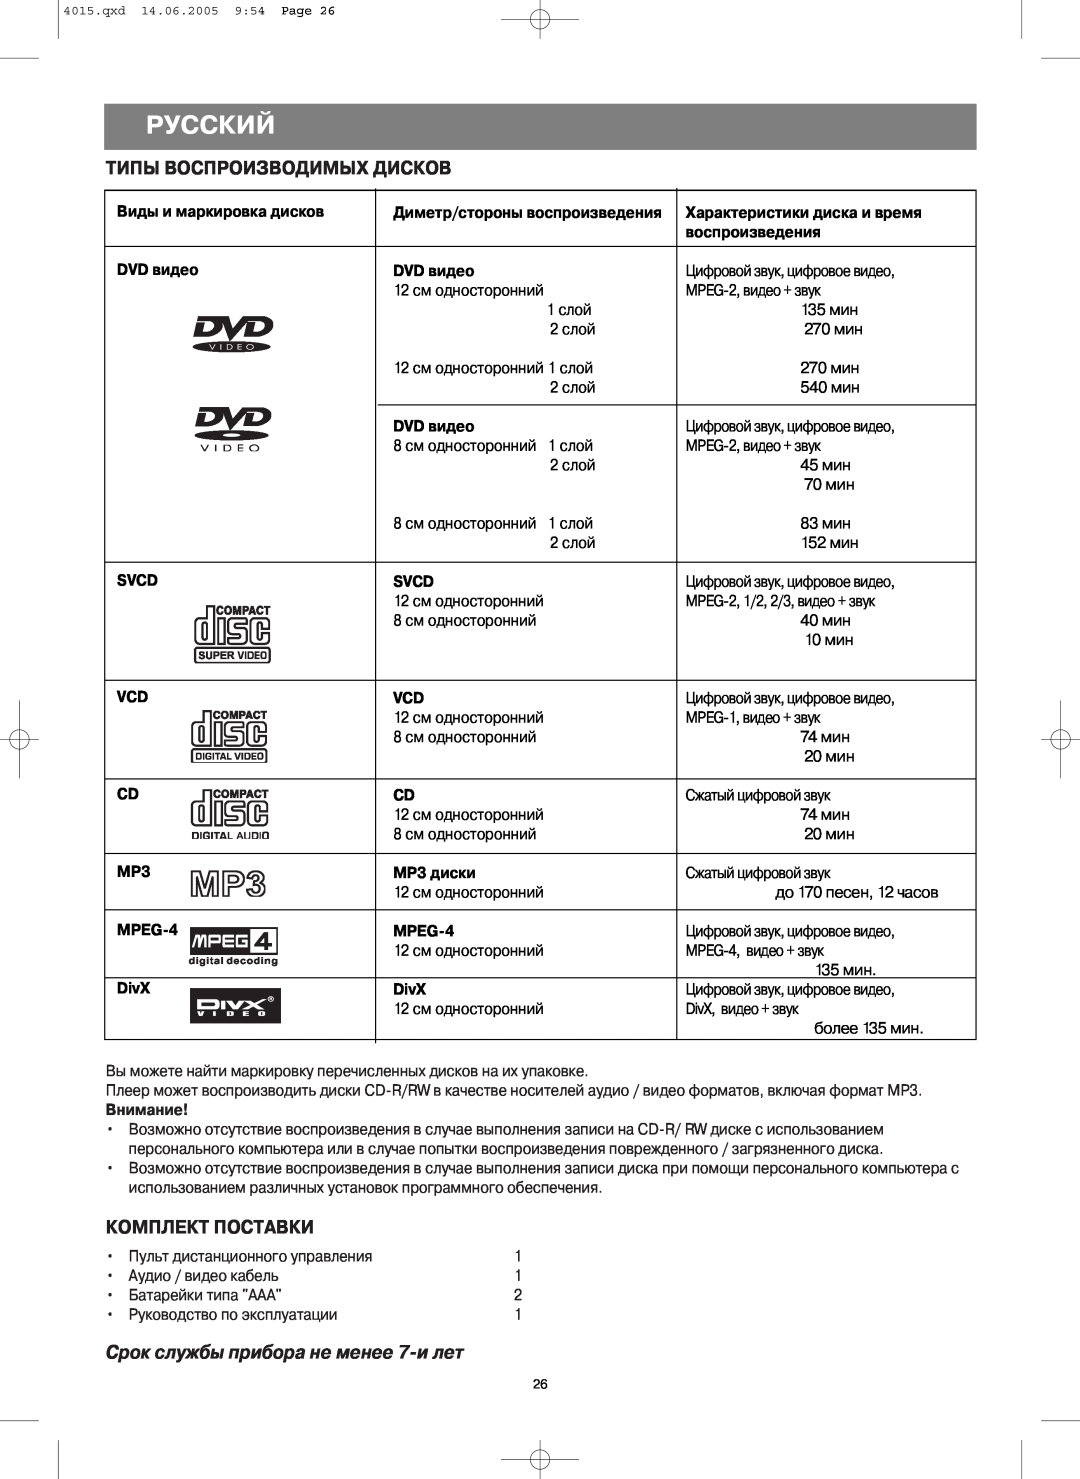 LG Electronics VT 4015 Типы Воспроизводимых Дисков, Комплект Поставки, Срок службы прибора не менее 7лет, Русский 